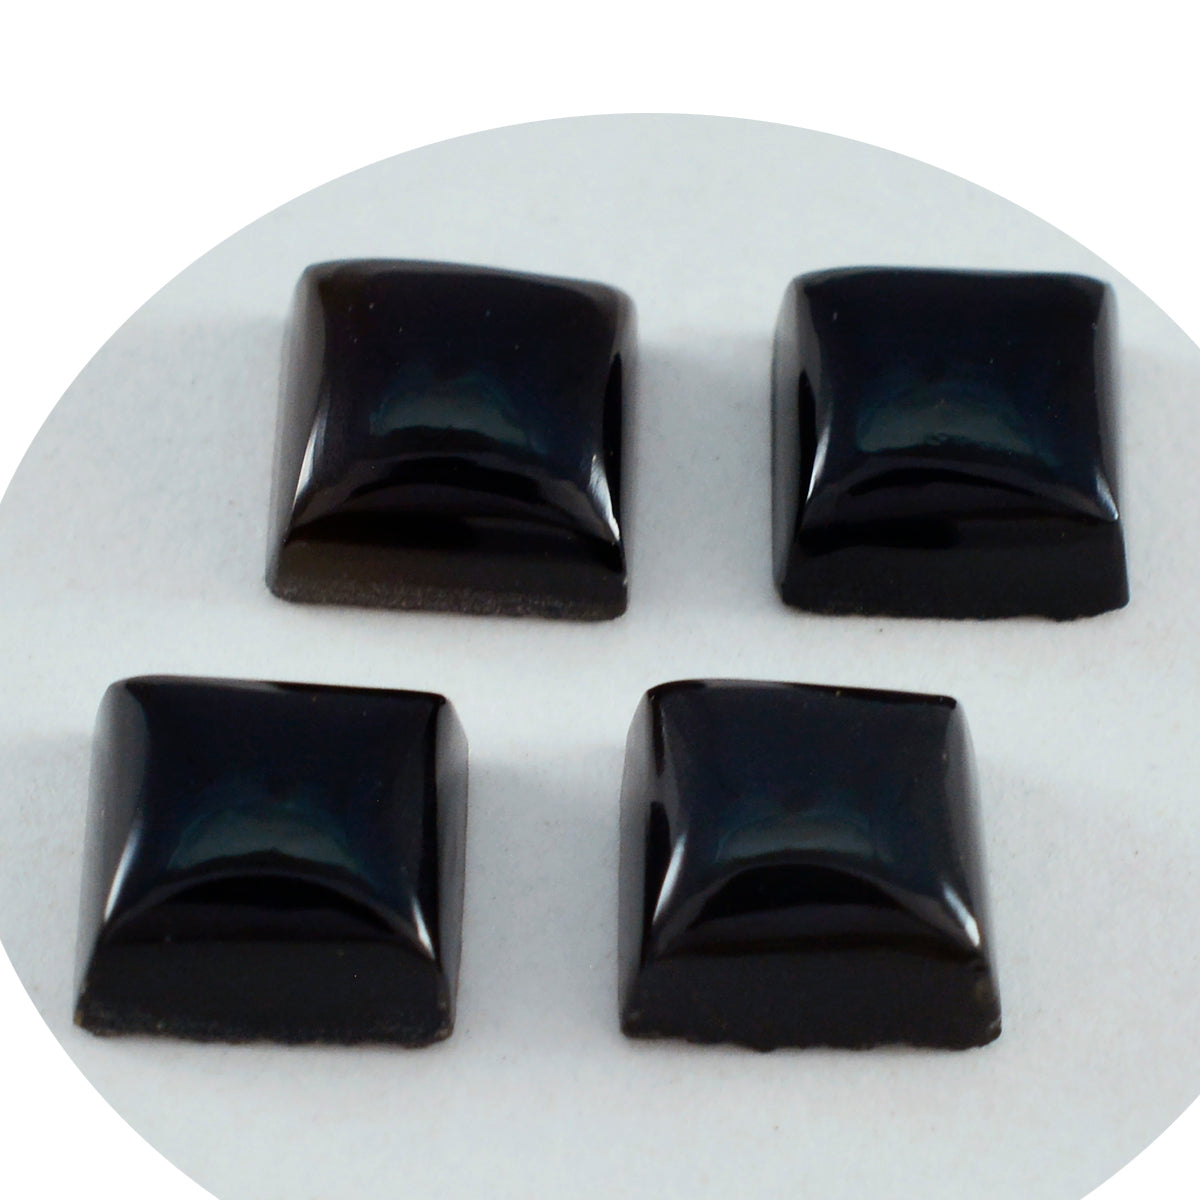 riyogems 1 шт. черный оникс кабошон 15x15 мм квадратной формы, красивый качественный свободный драгоценный камень